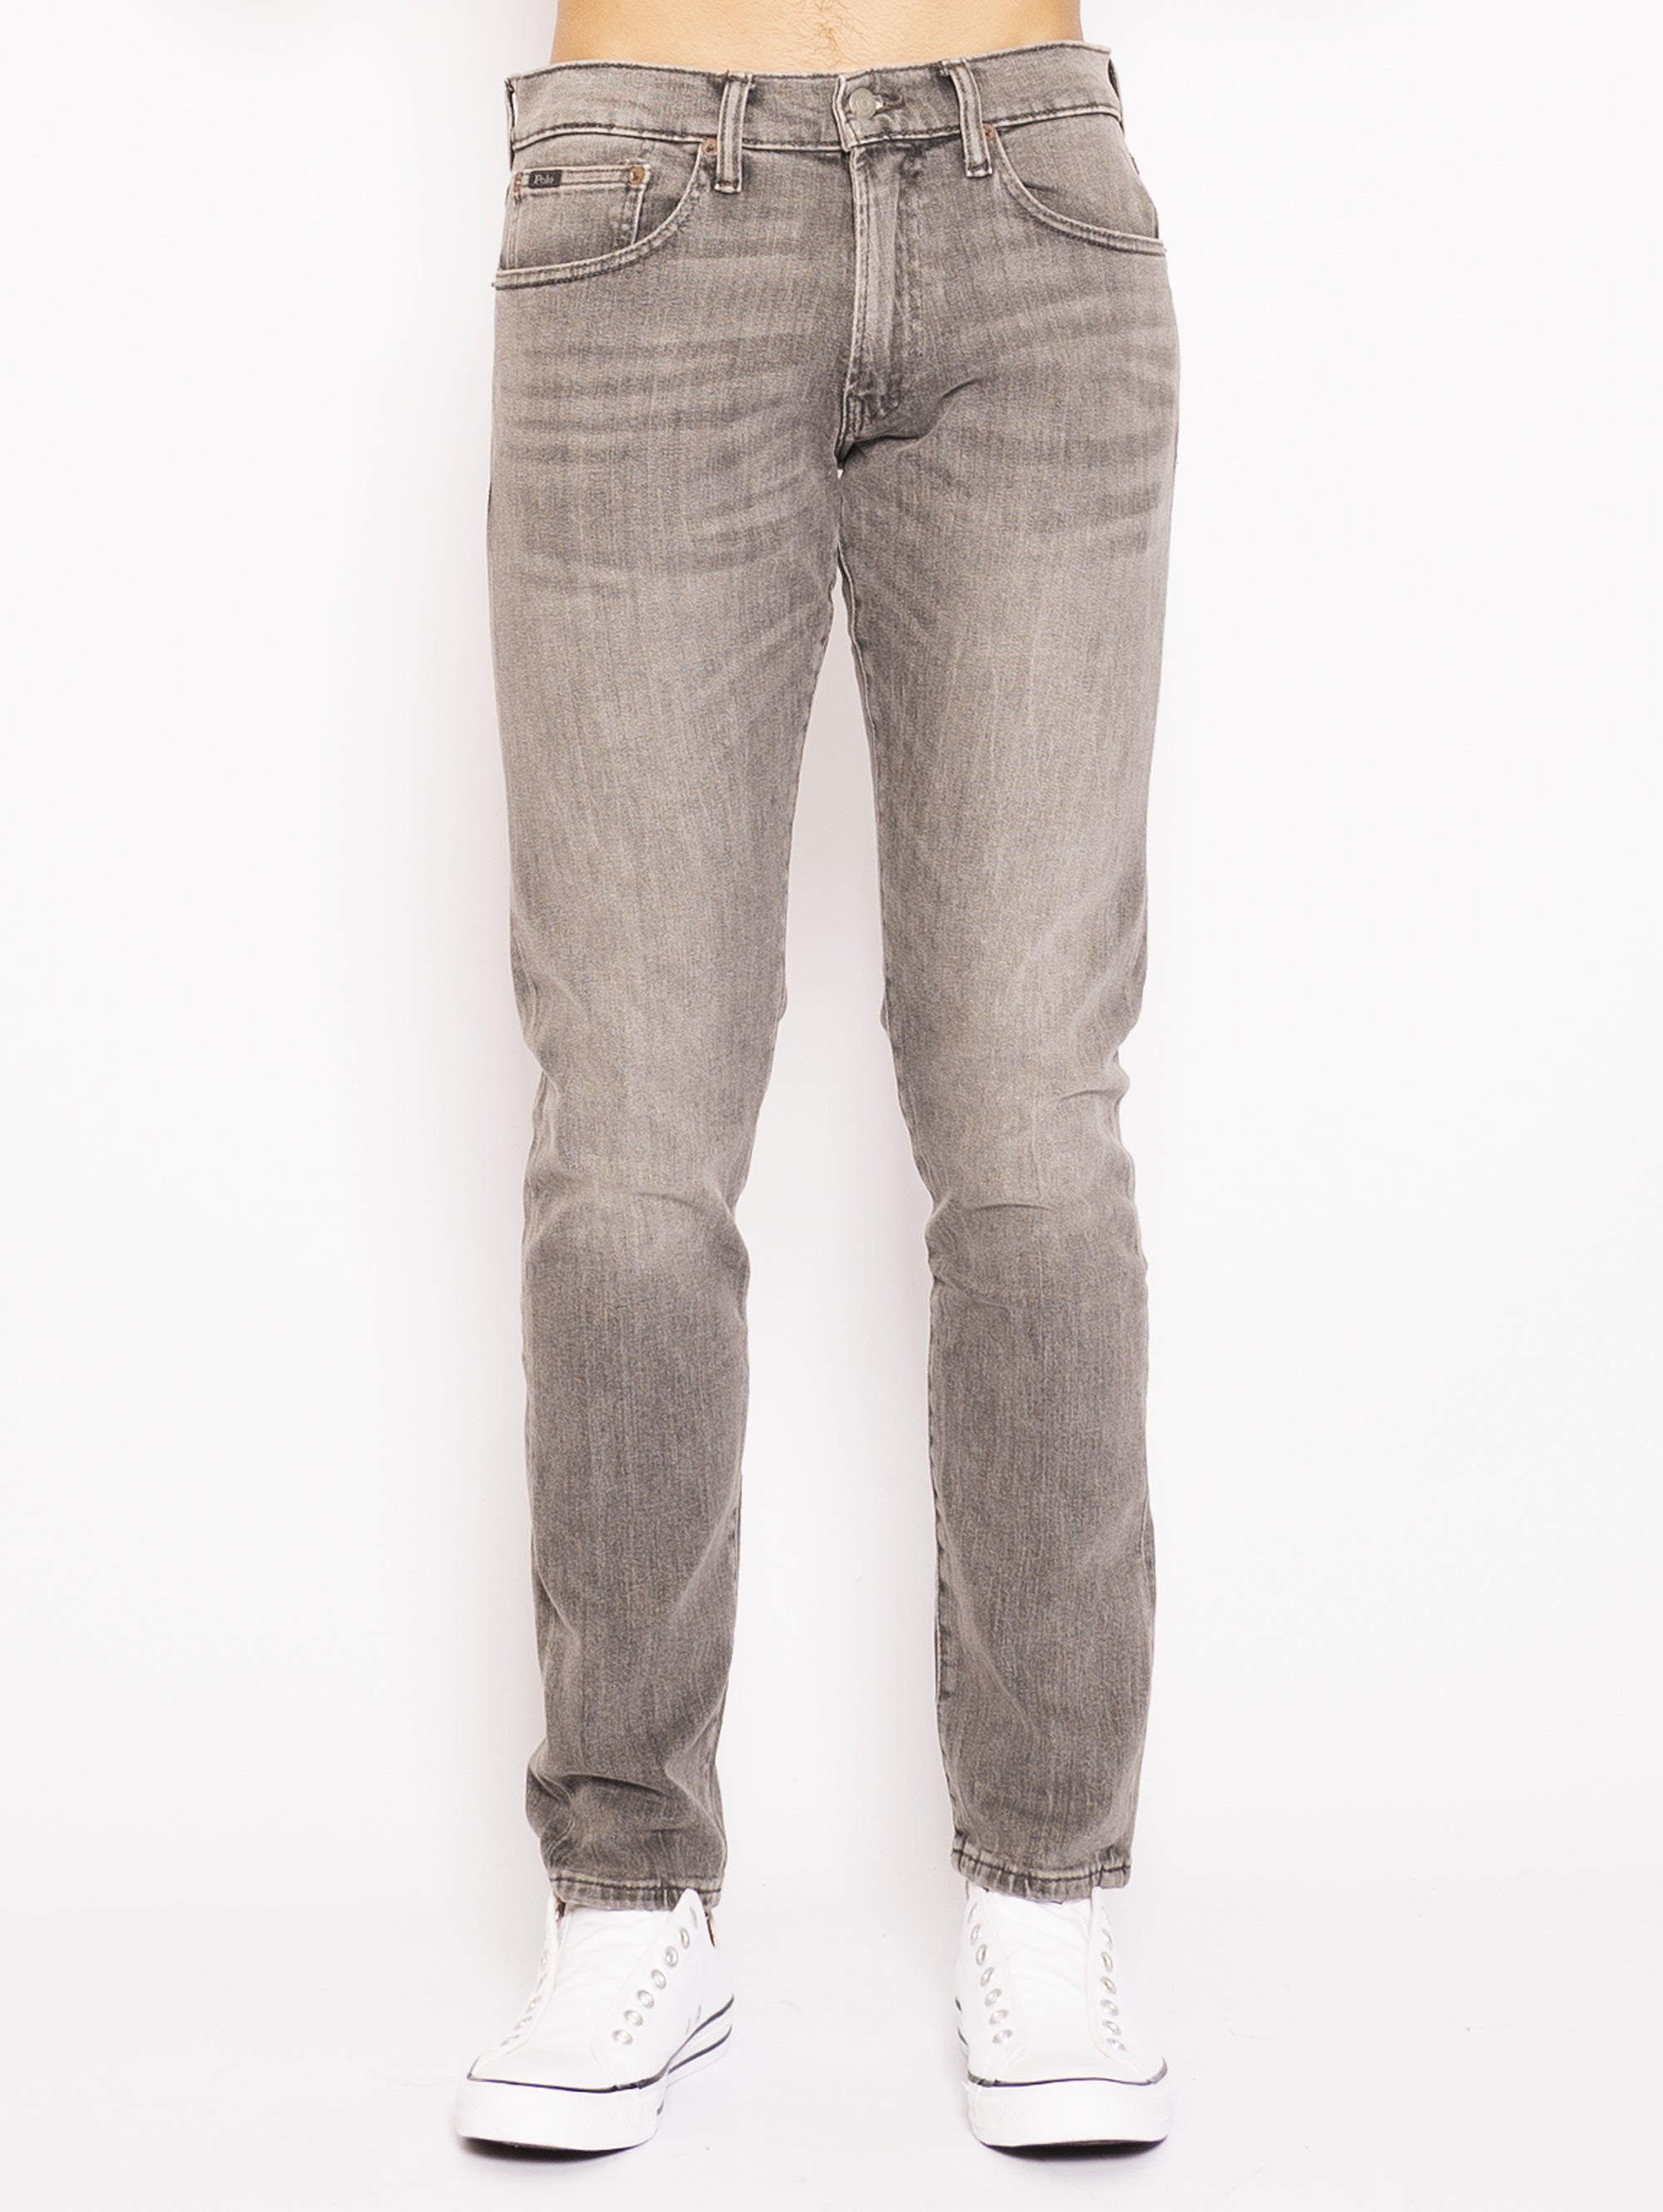 RALPH LAUREN-Jeans in Denim Grigio-TRYME Shop